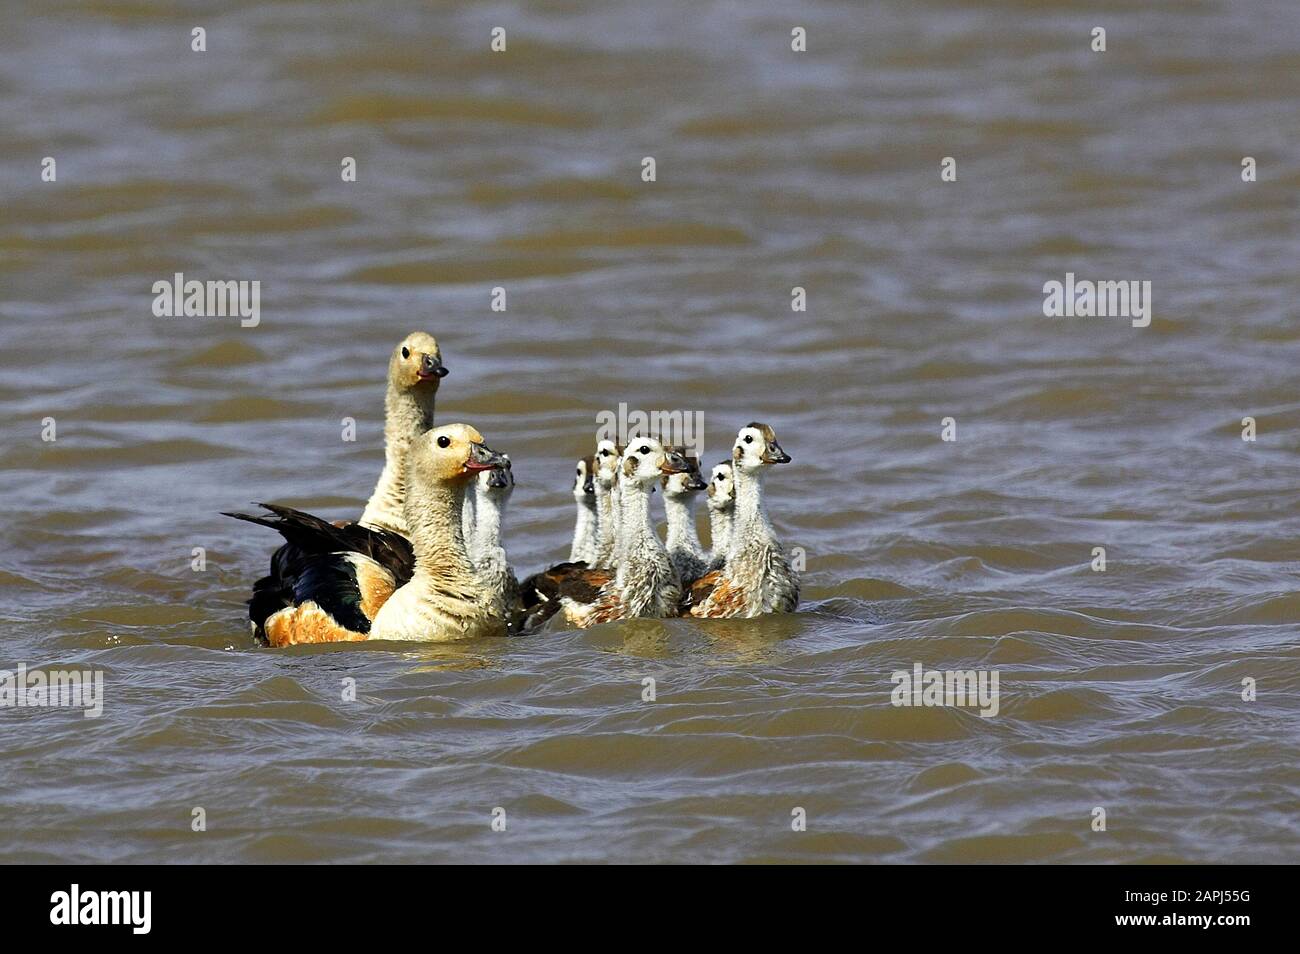 Orinoco Goose, neochen jubata, Family swimming, Los Lianos in Venezuela Stock Photo